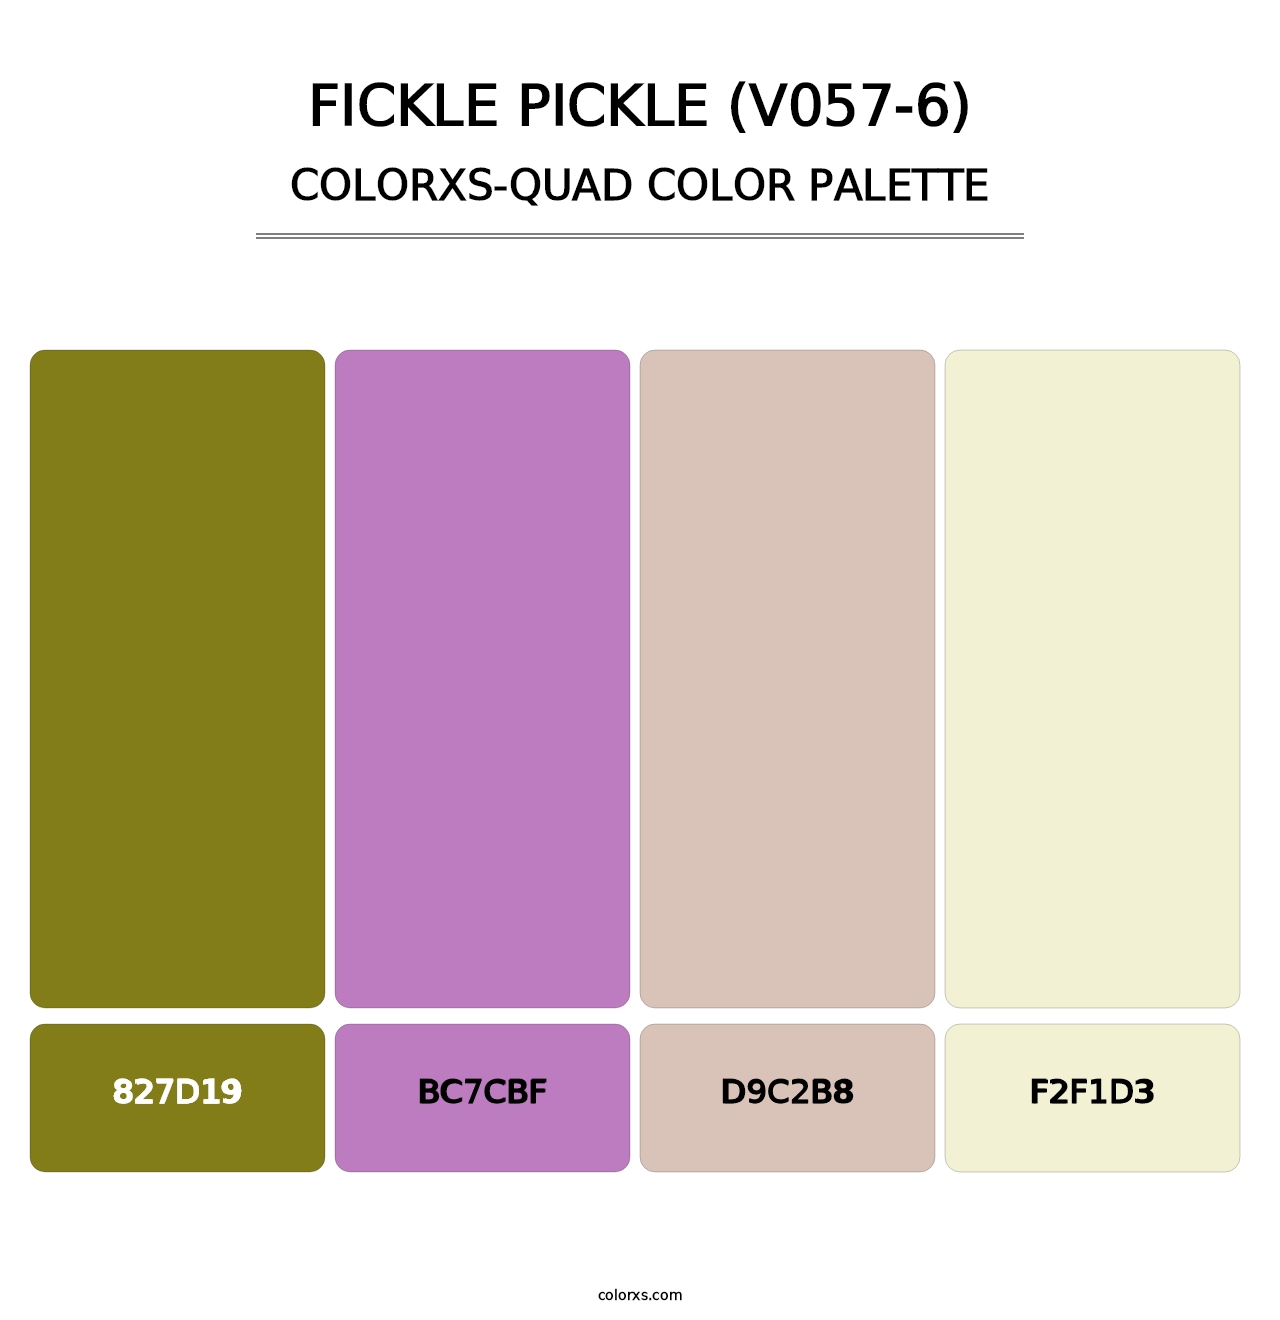 Fickle Pickle (V057-6) - Colorxs Quad Palette